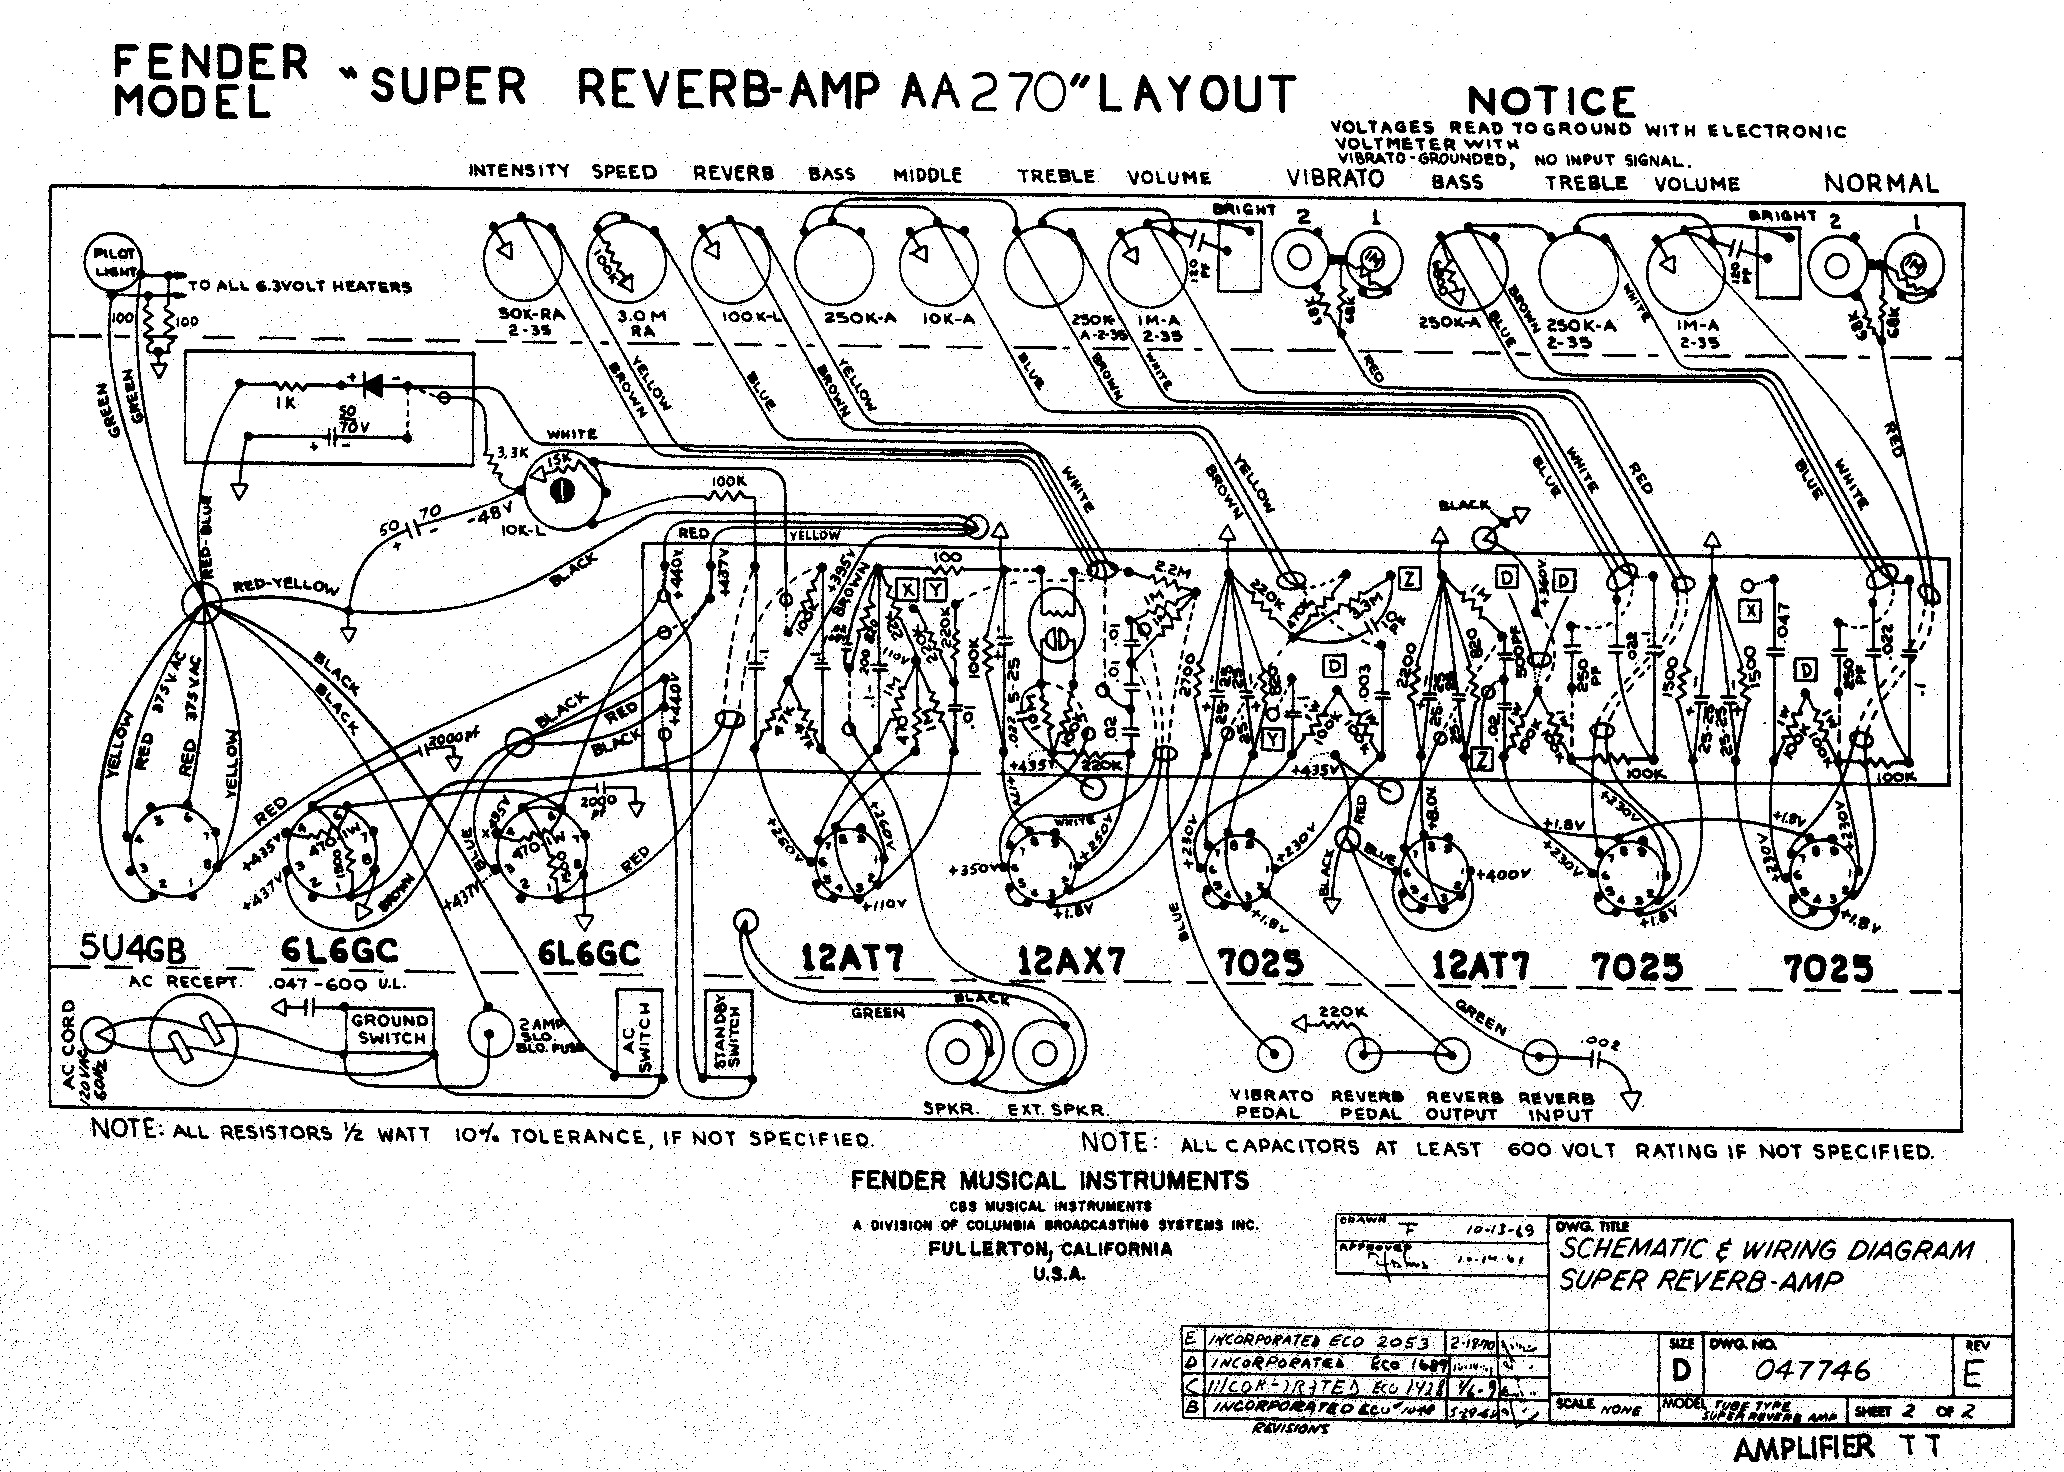 super_reverb_aa270_layout.pdf